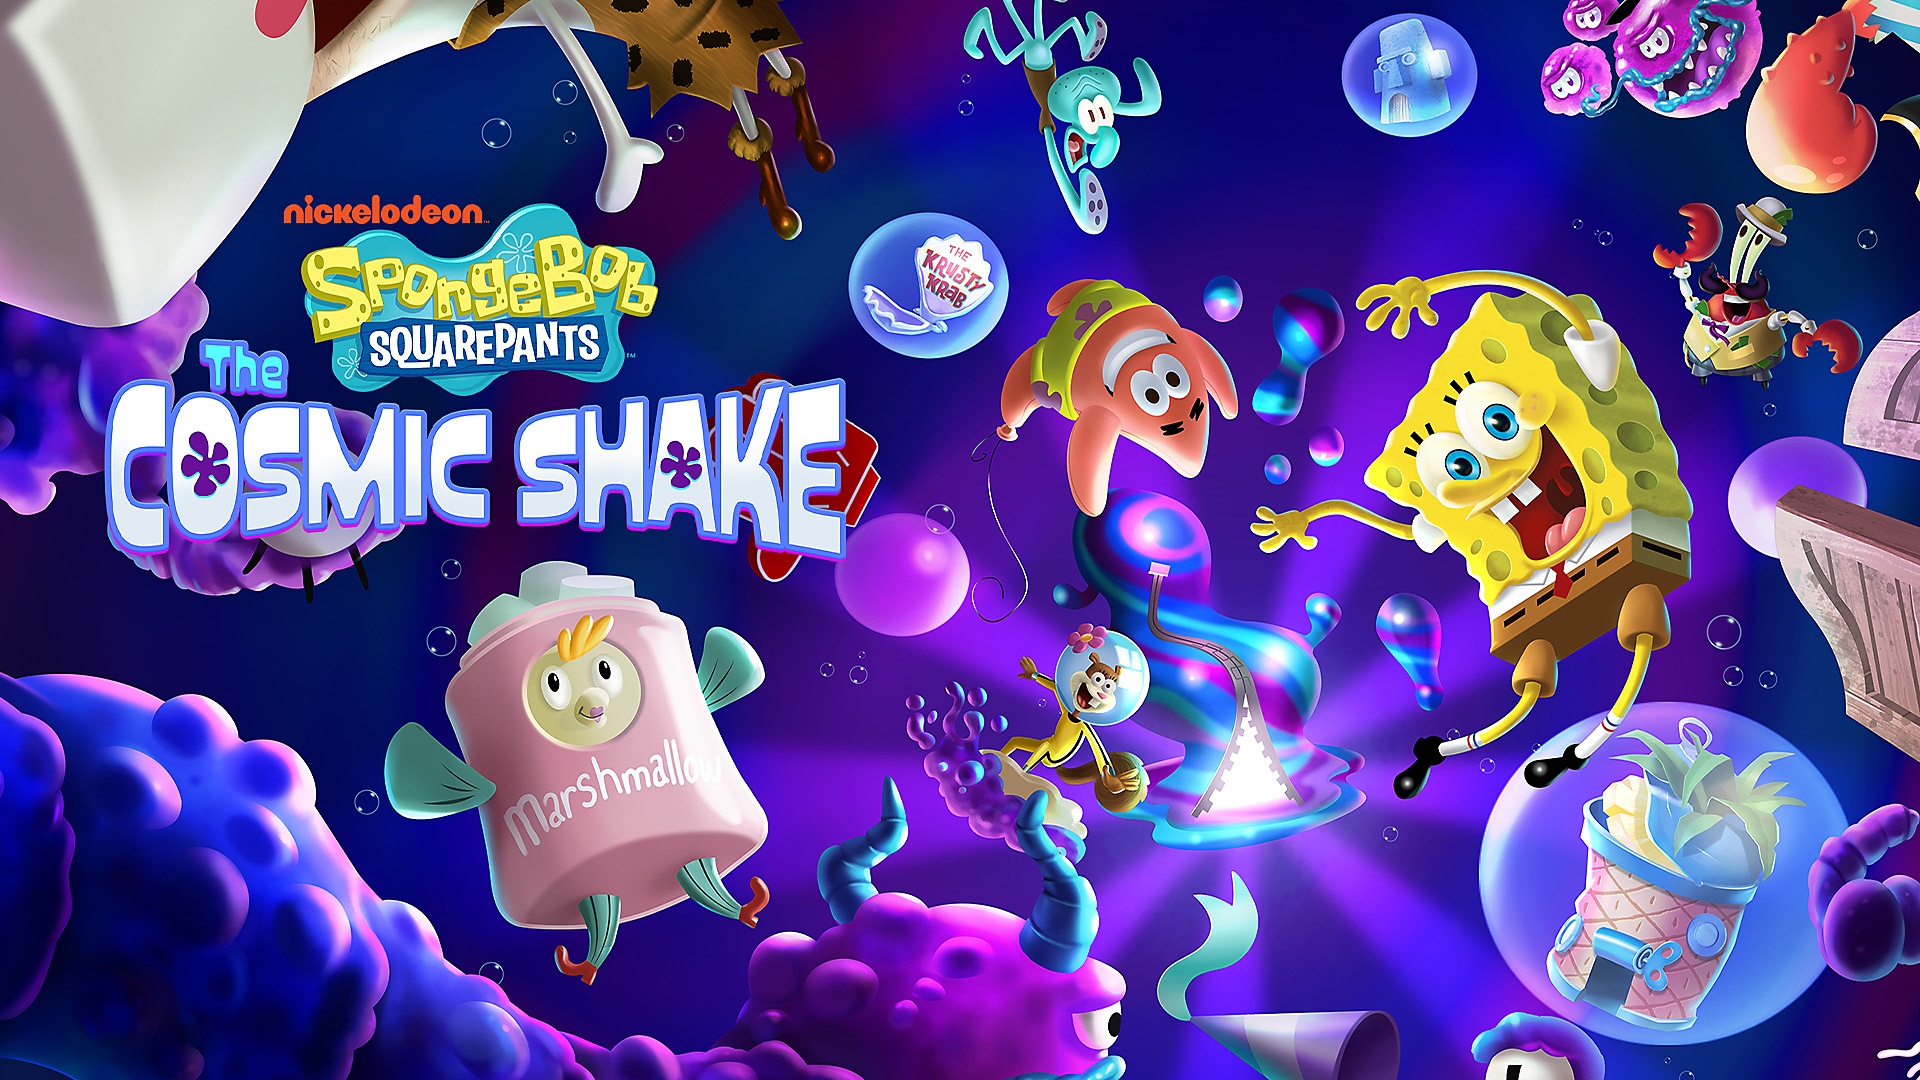 Bob Esponja, Patricio y otros personajes flotando bajo el agua para SpongeBob SquarePants: The Cosmic Shake en PS4 y PS5